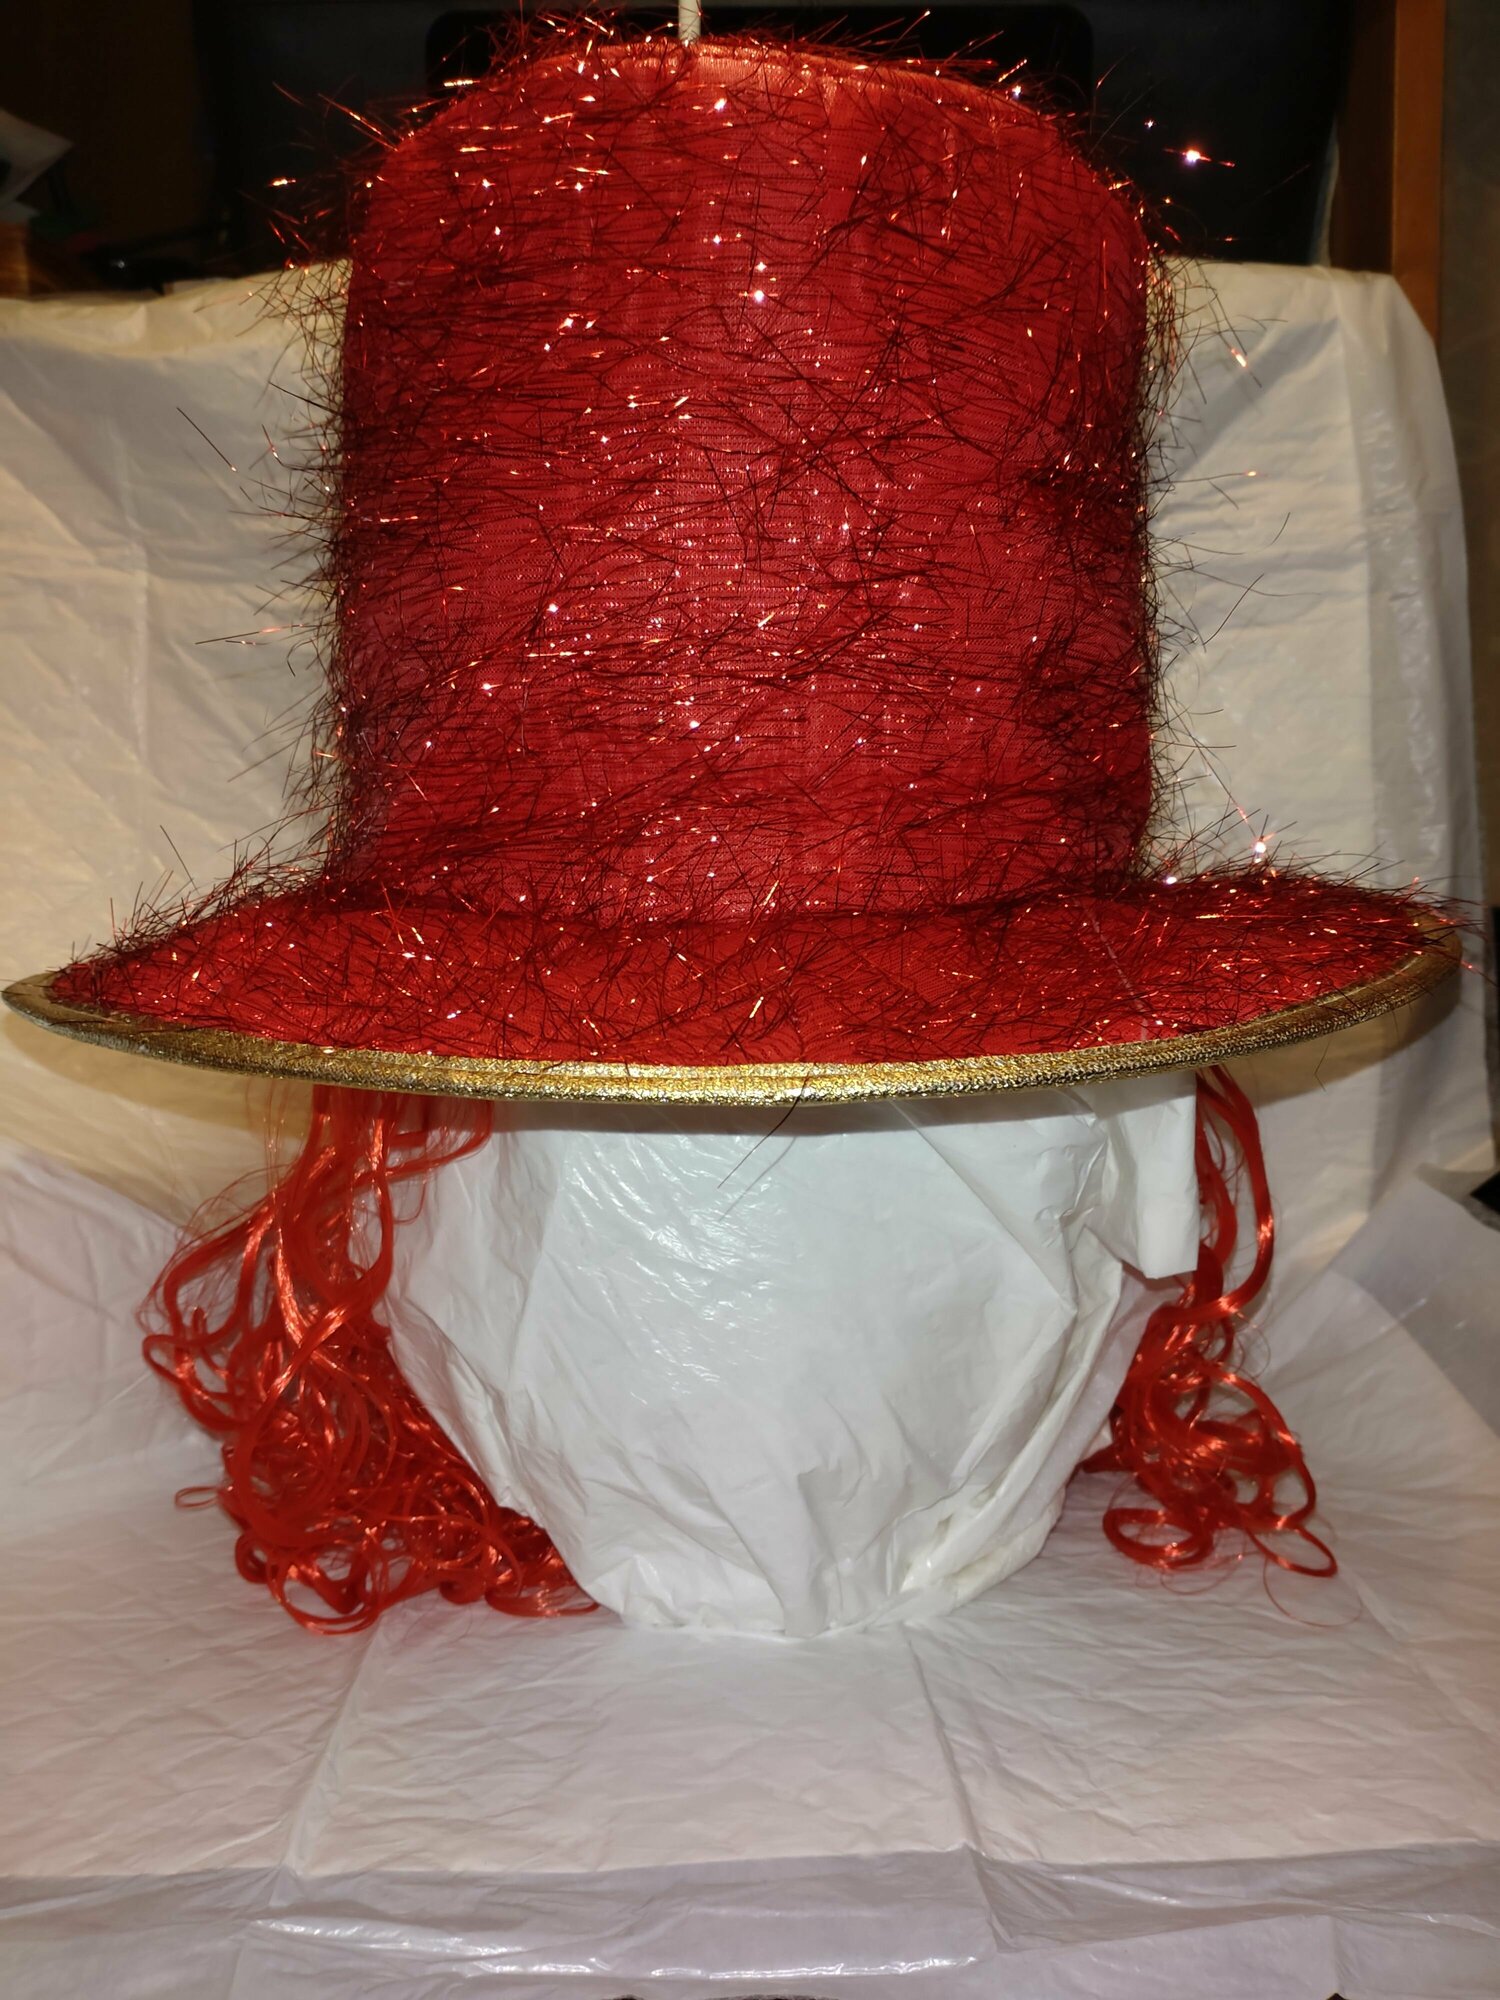 Шляпа карнавальная с париком. Красная.